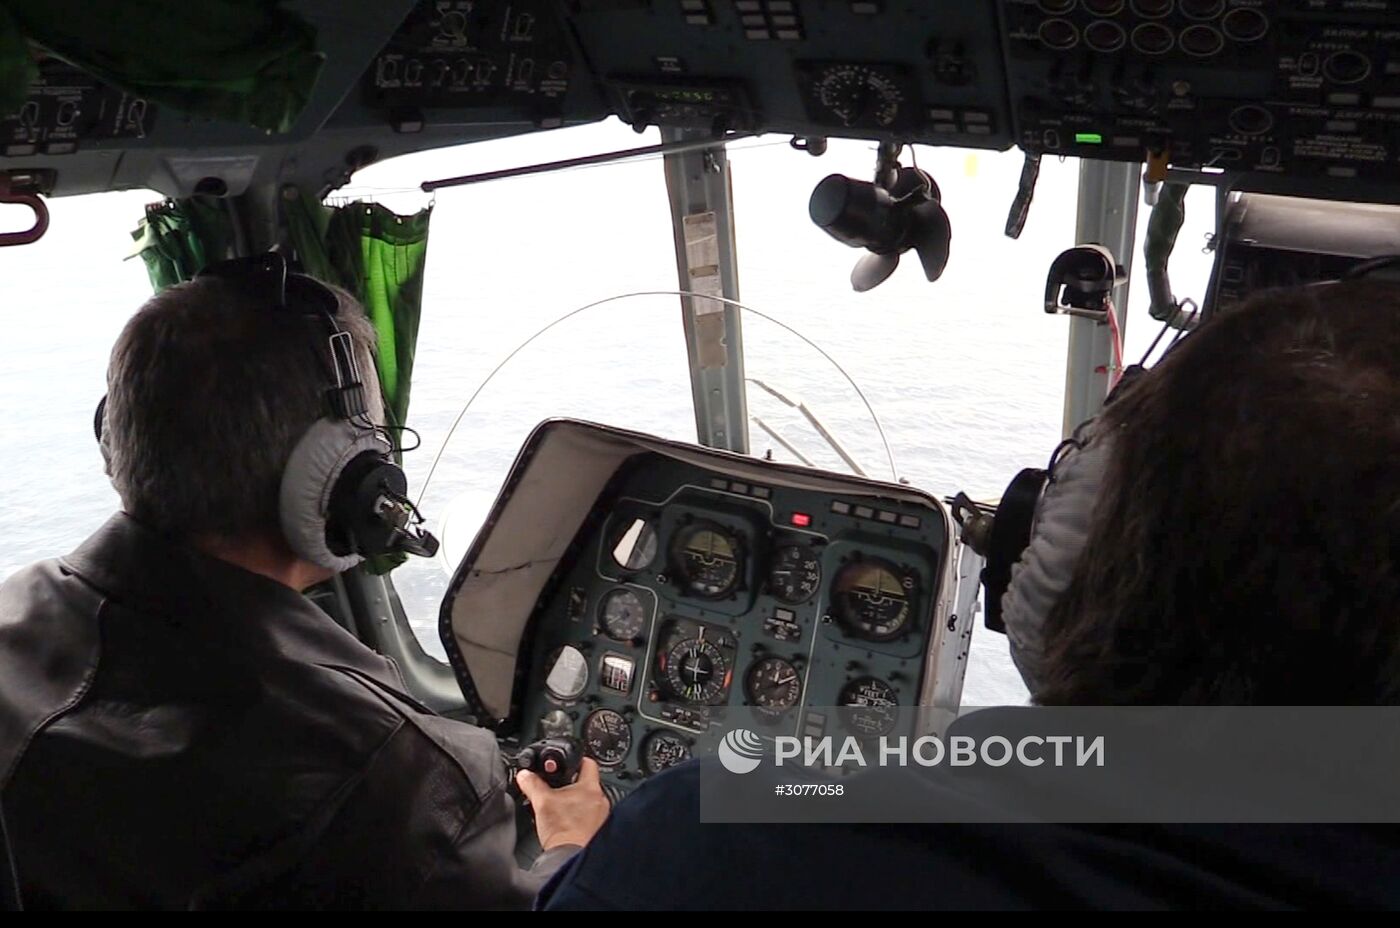 Поисково-спасательная операция в акватории Черного моря